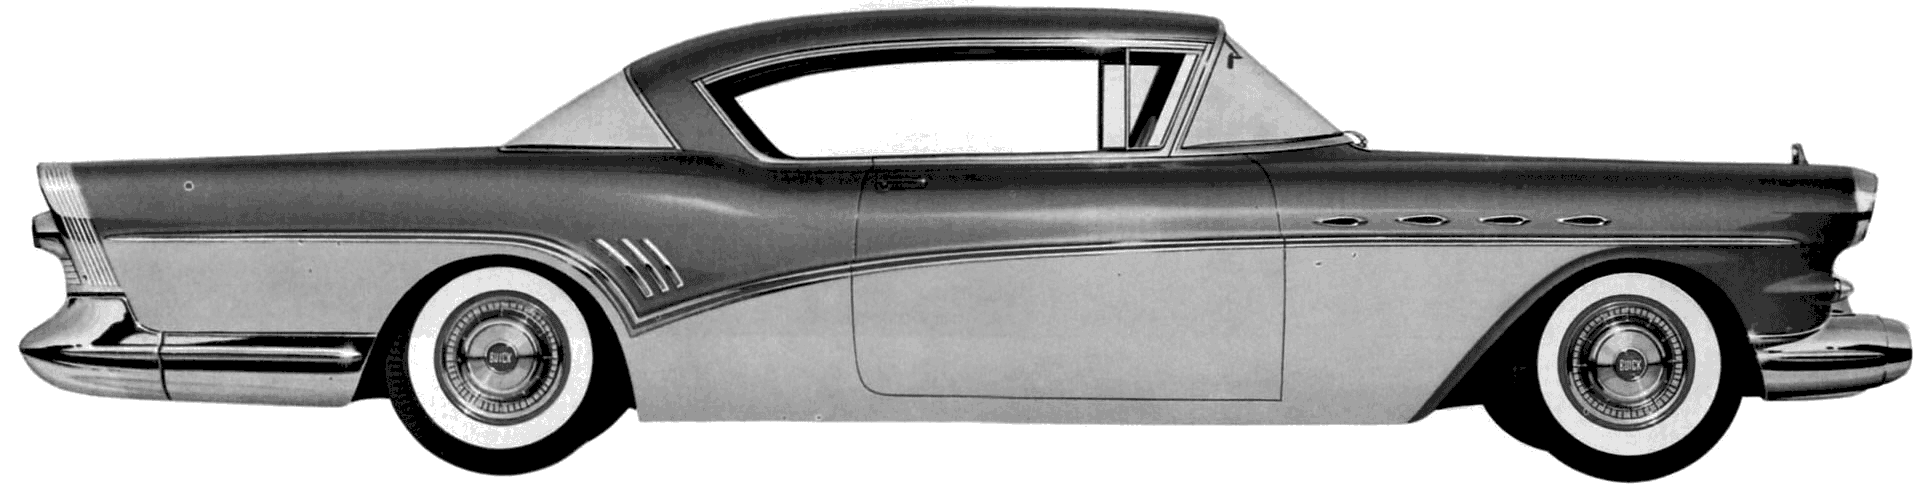 小汽車 Buick Super Riviera Hardtop 1957 